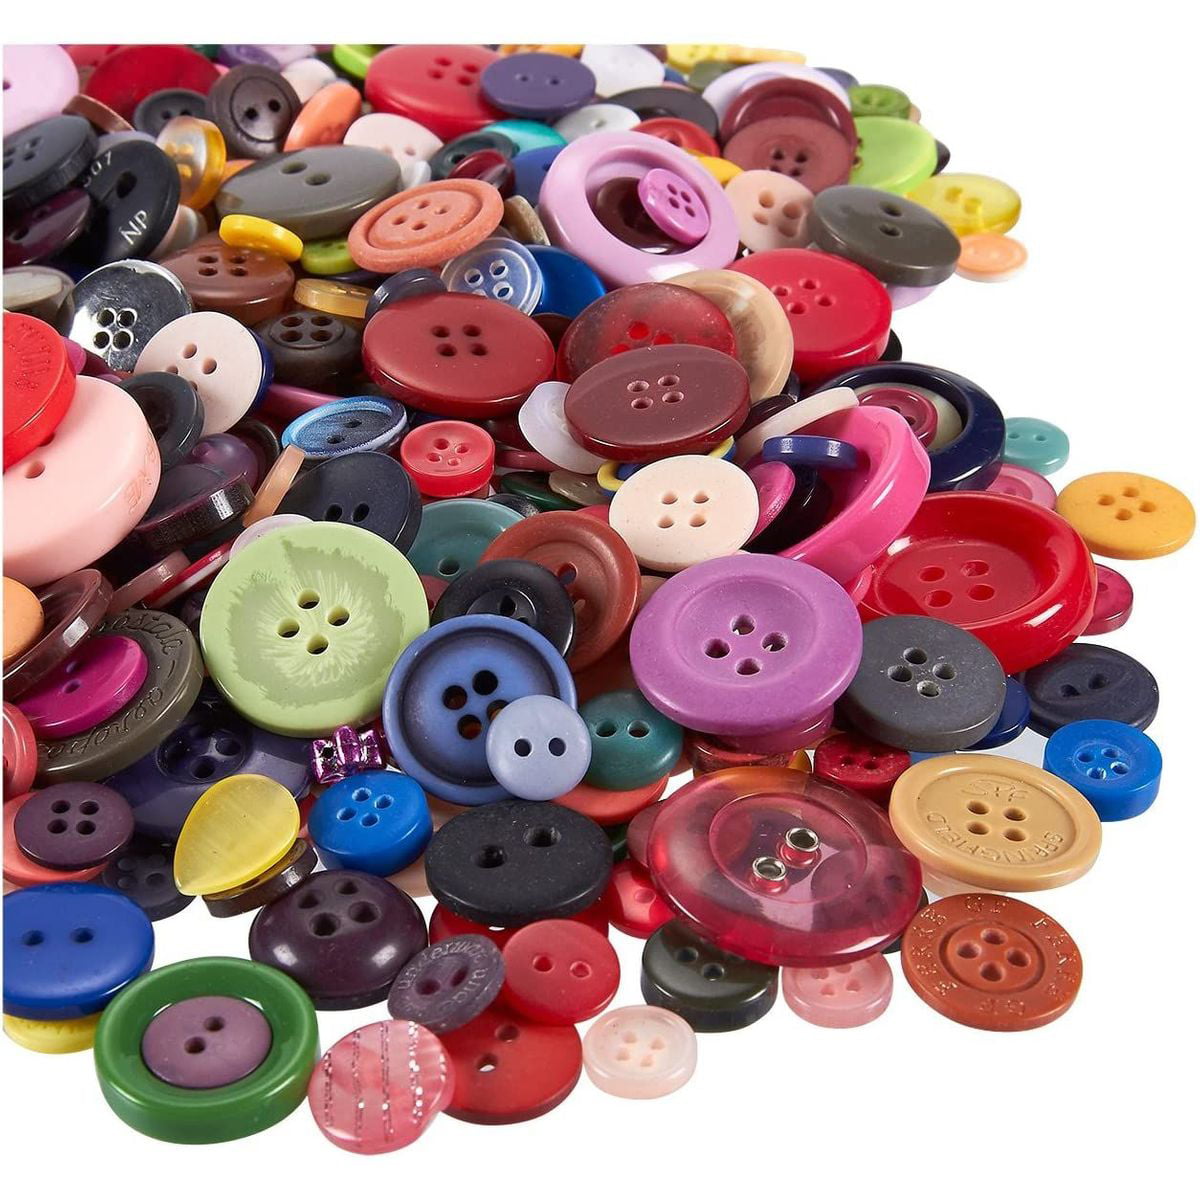 19 pcs Red & Orange Buttons Plastic Vintage Buttons